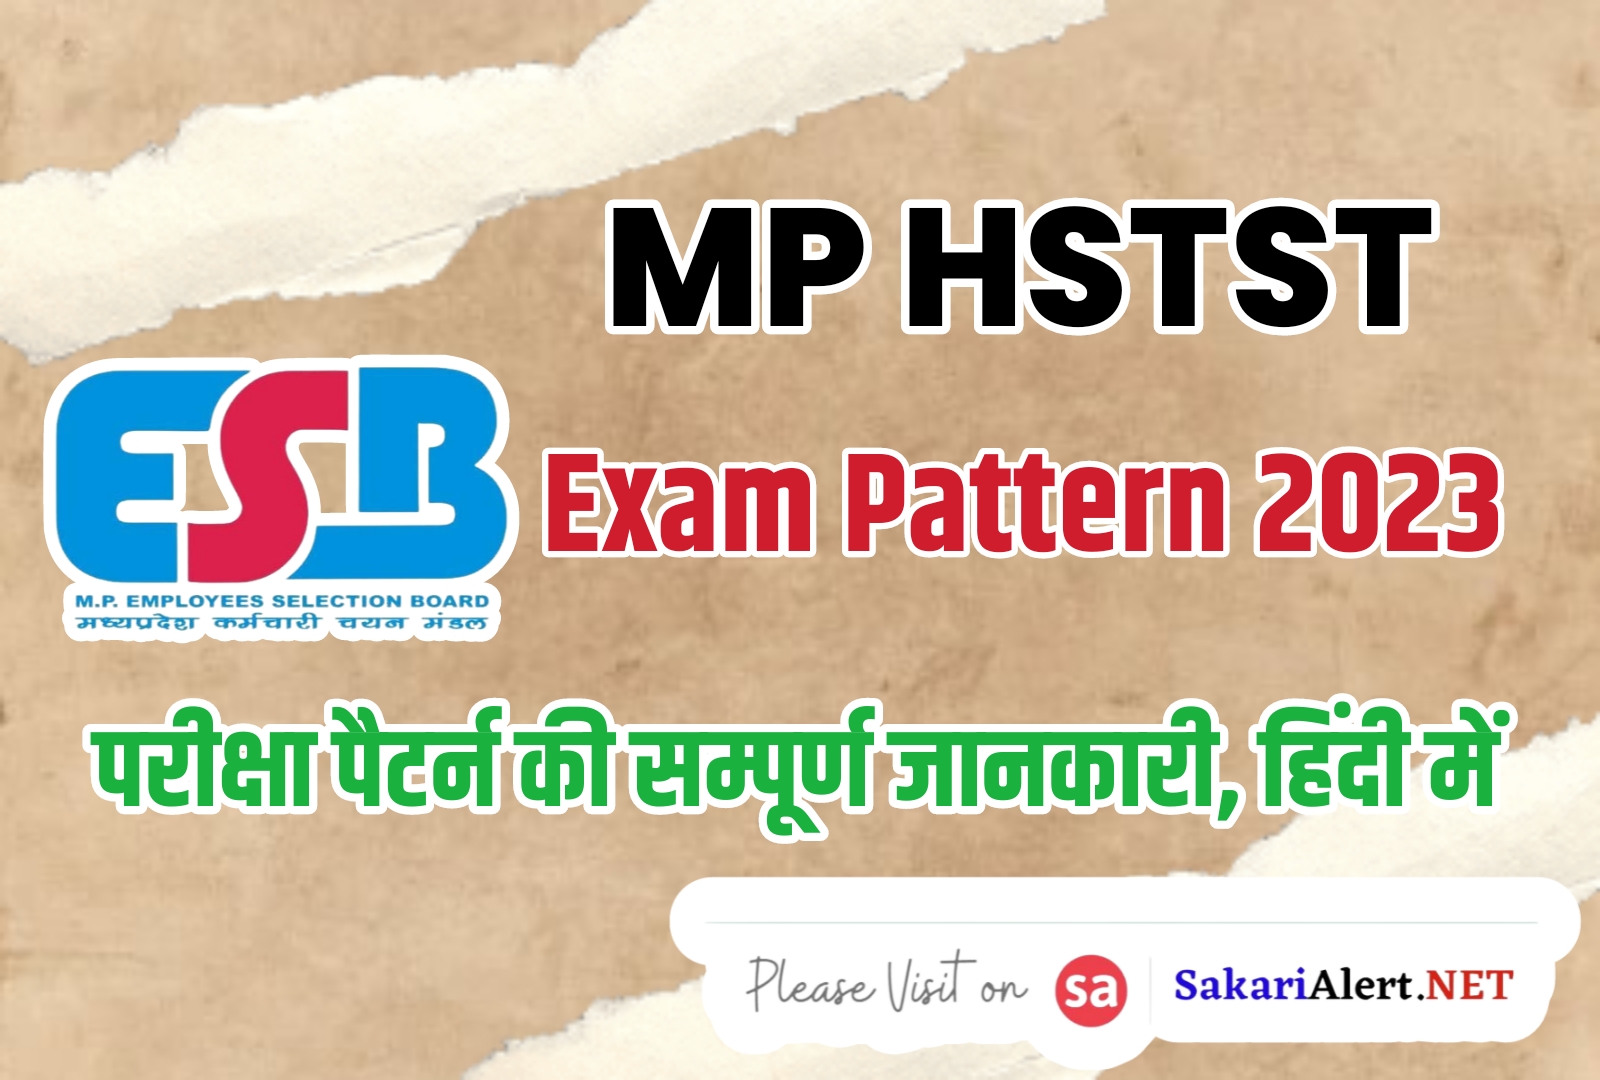 MP HSTST Exam Pattern 2023 | मध्य प्रदेश HSTST परीक्षा पैटर्न